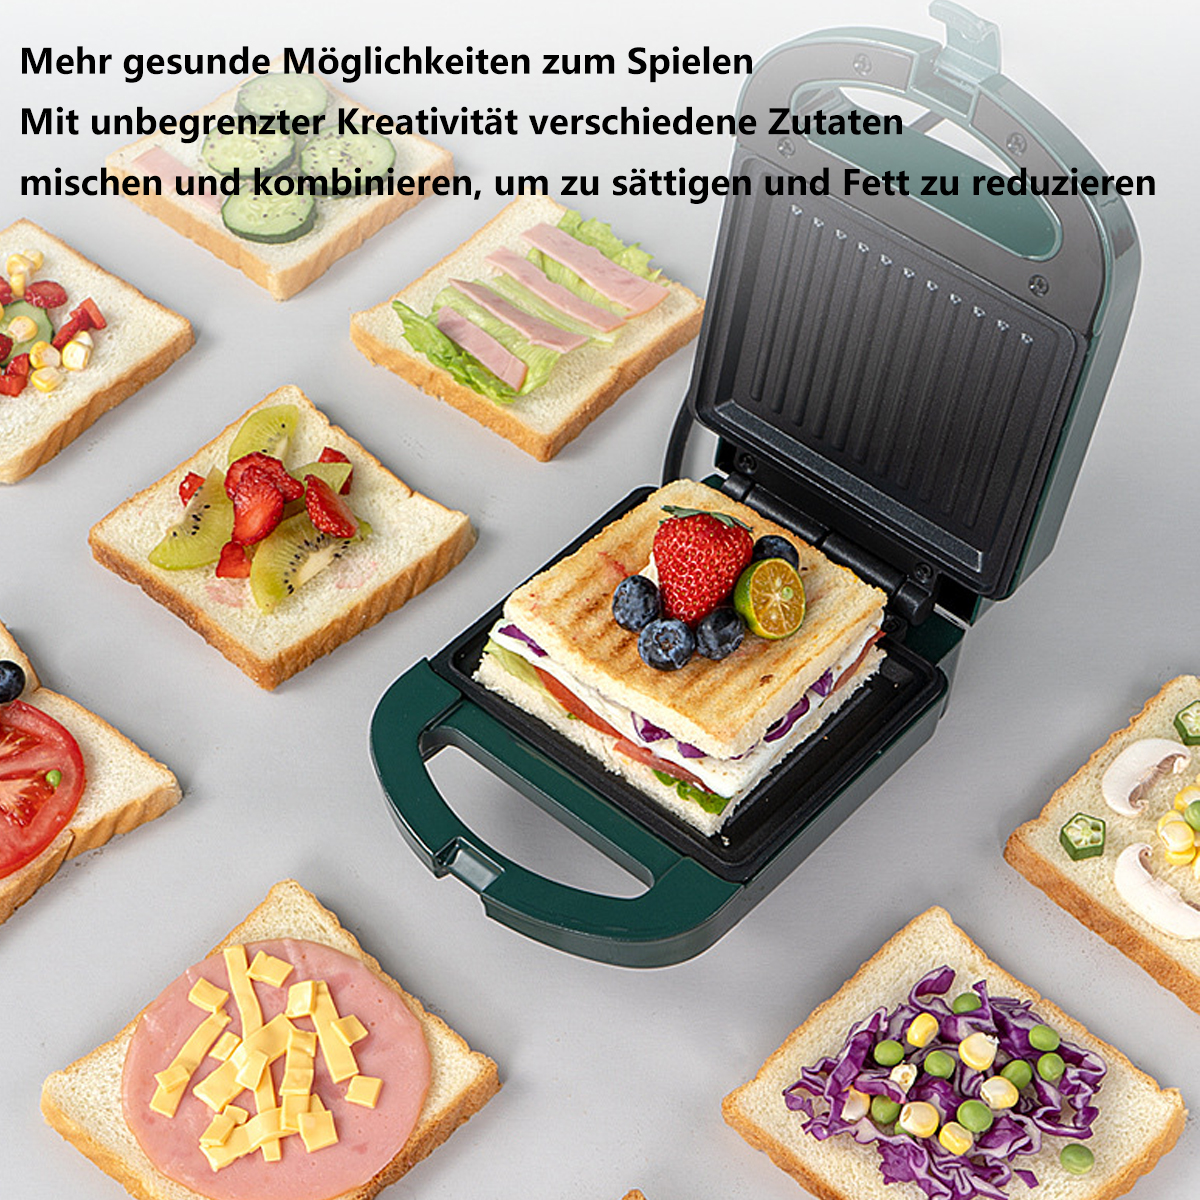 Sandwichmaker Maker FEI Multifunktions-Toaster Sandwichmaker Family Breakfast Rosa Pink